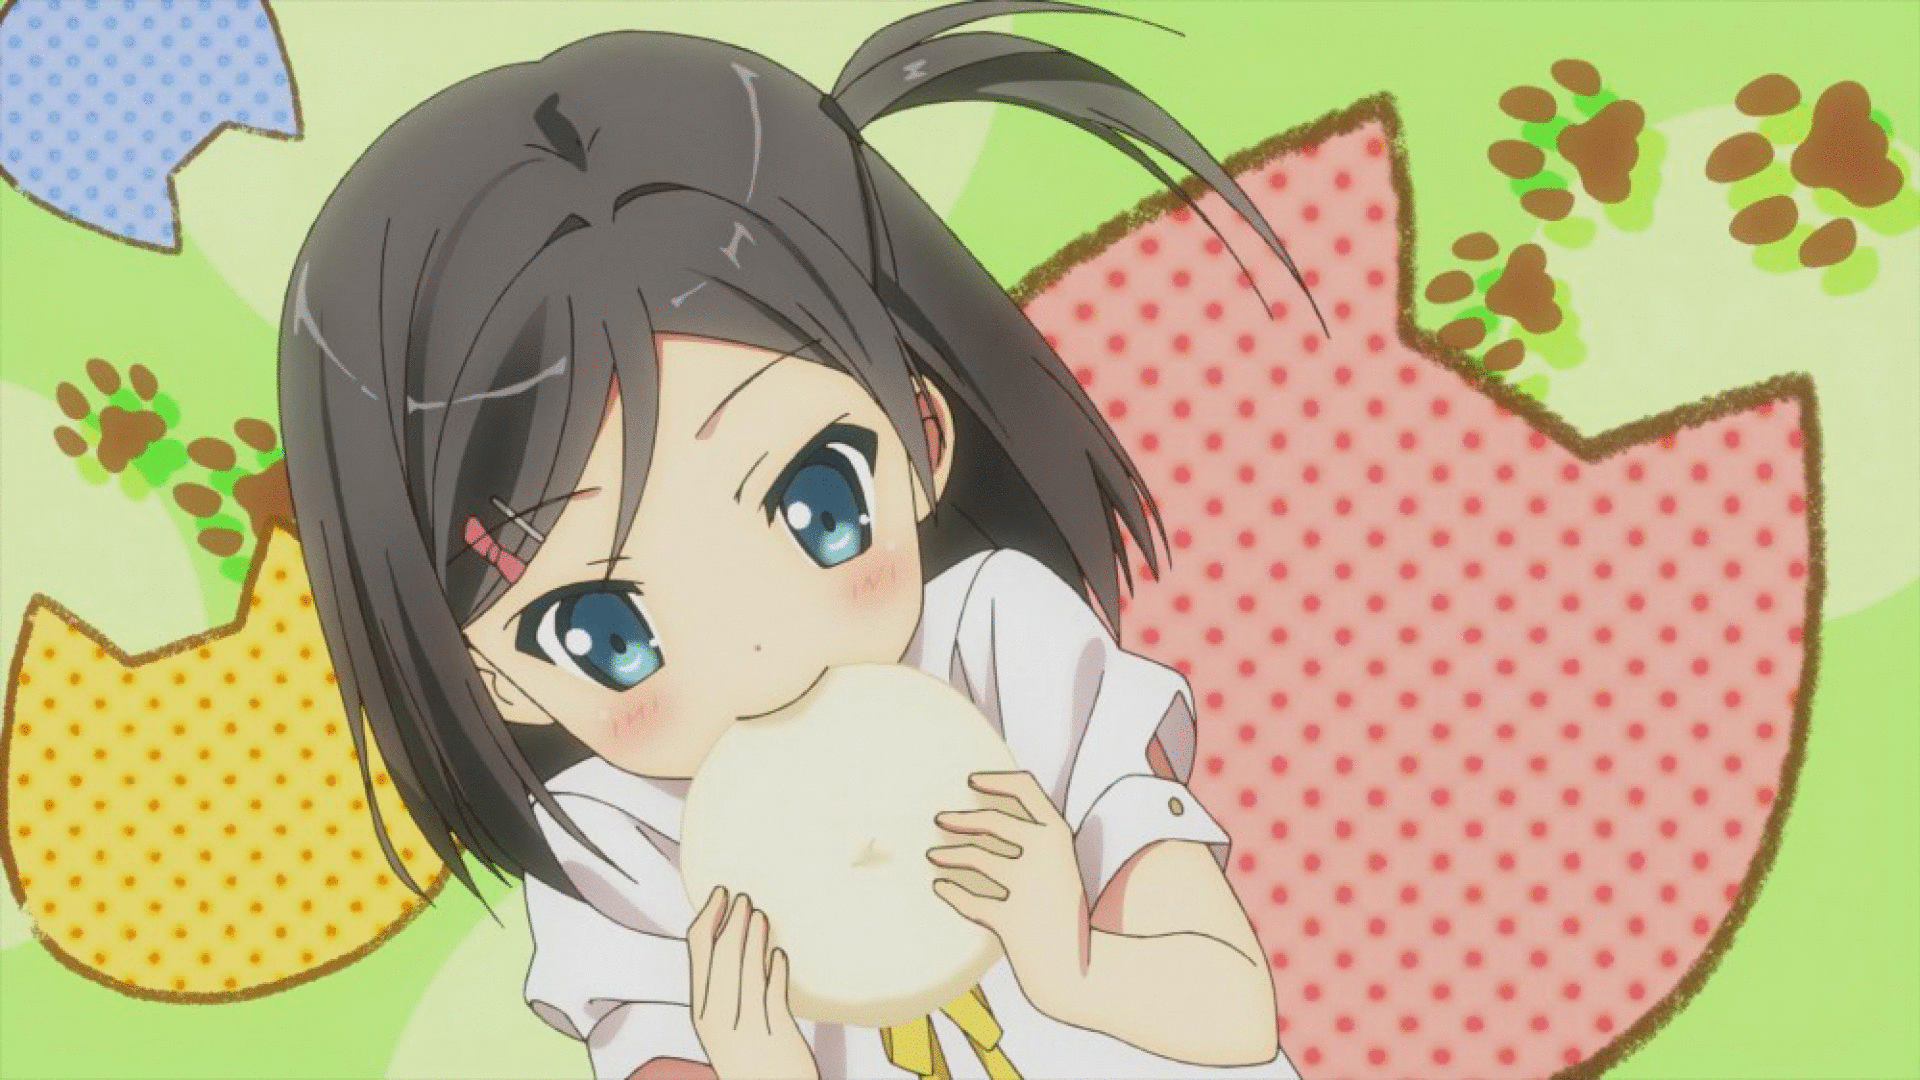 Anime Girl Eating French Fries GIF  GIFDBcom